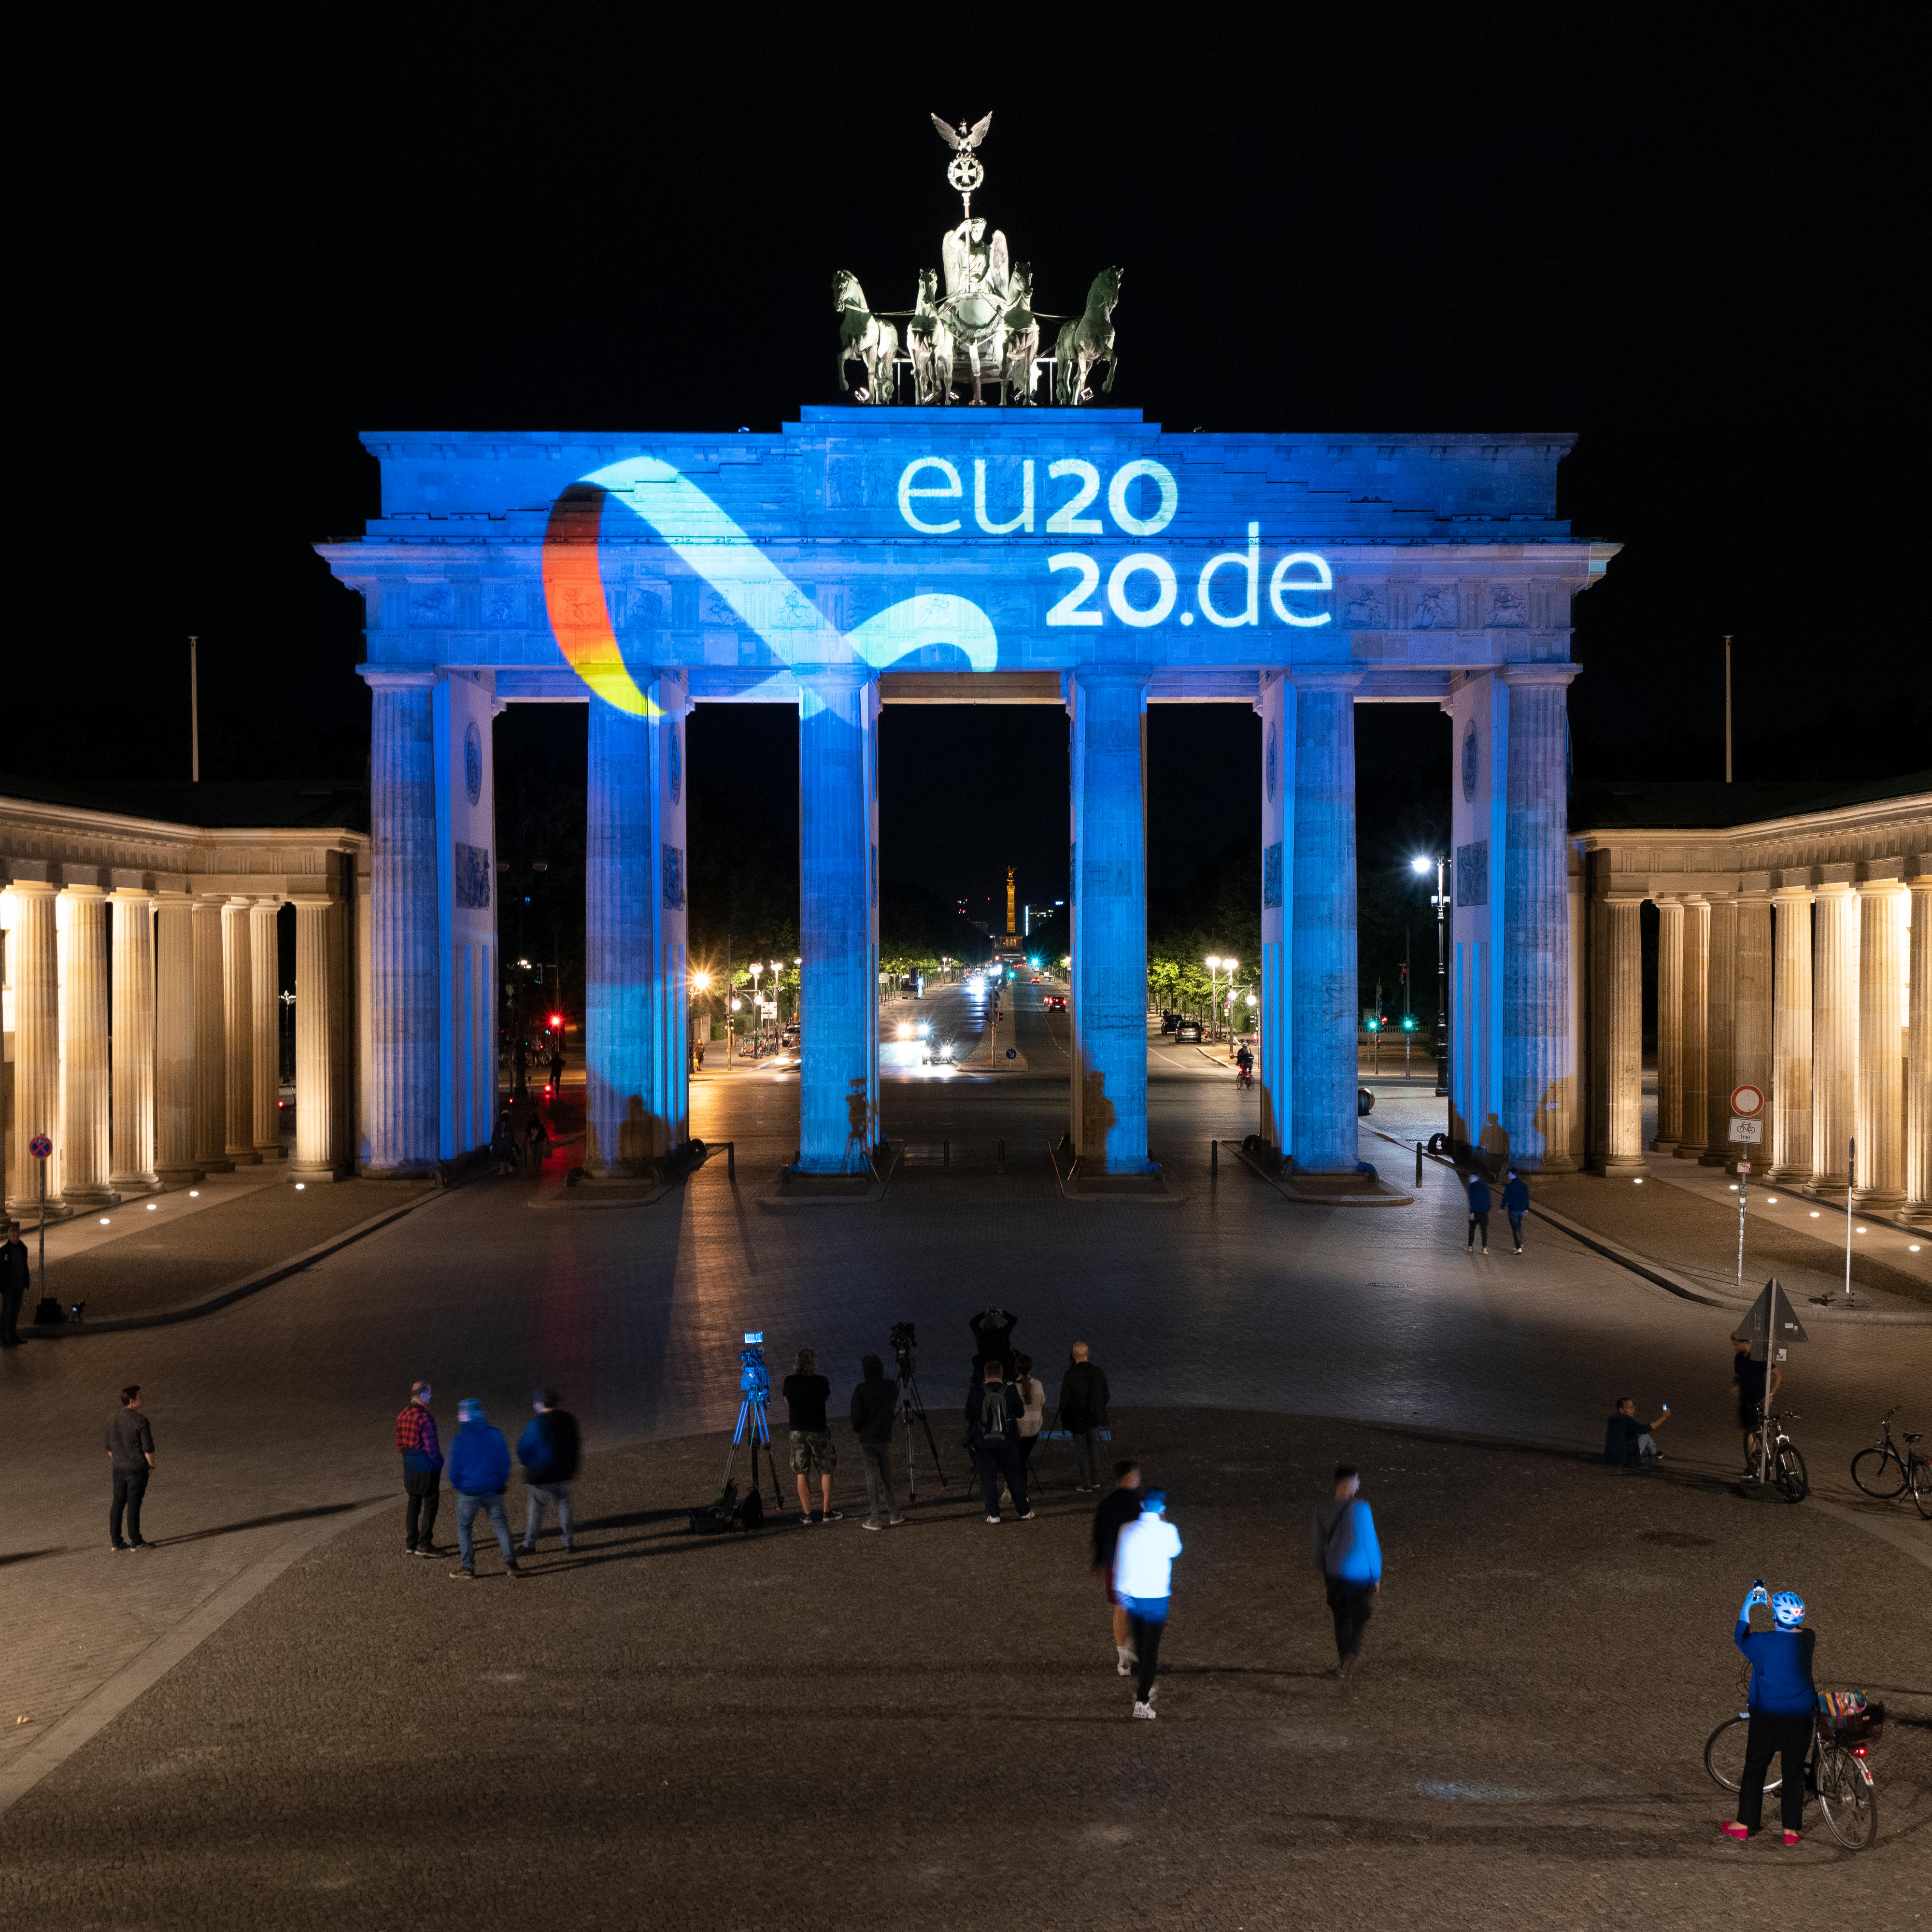 Illumination des Brandenburger Tors anlässlich des Beginns der deutschen EU-Ratspräsidentschaft vom 1. Juli bis 31. Dezember 2020